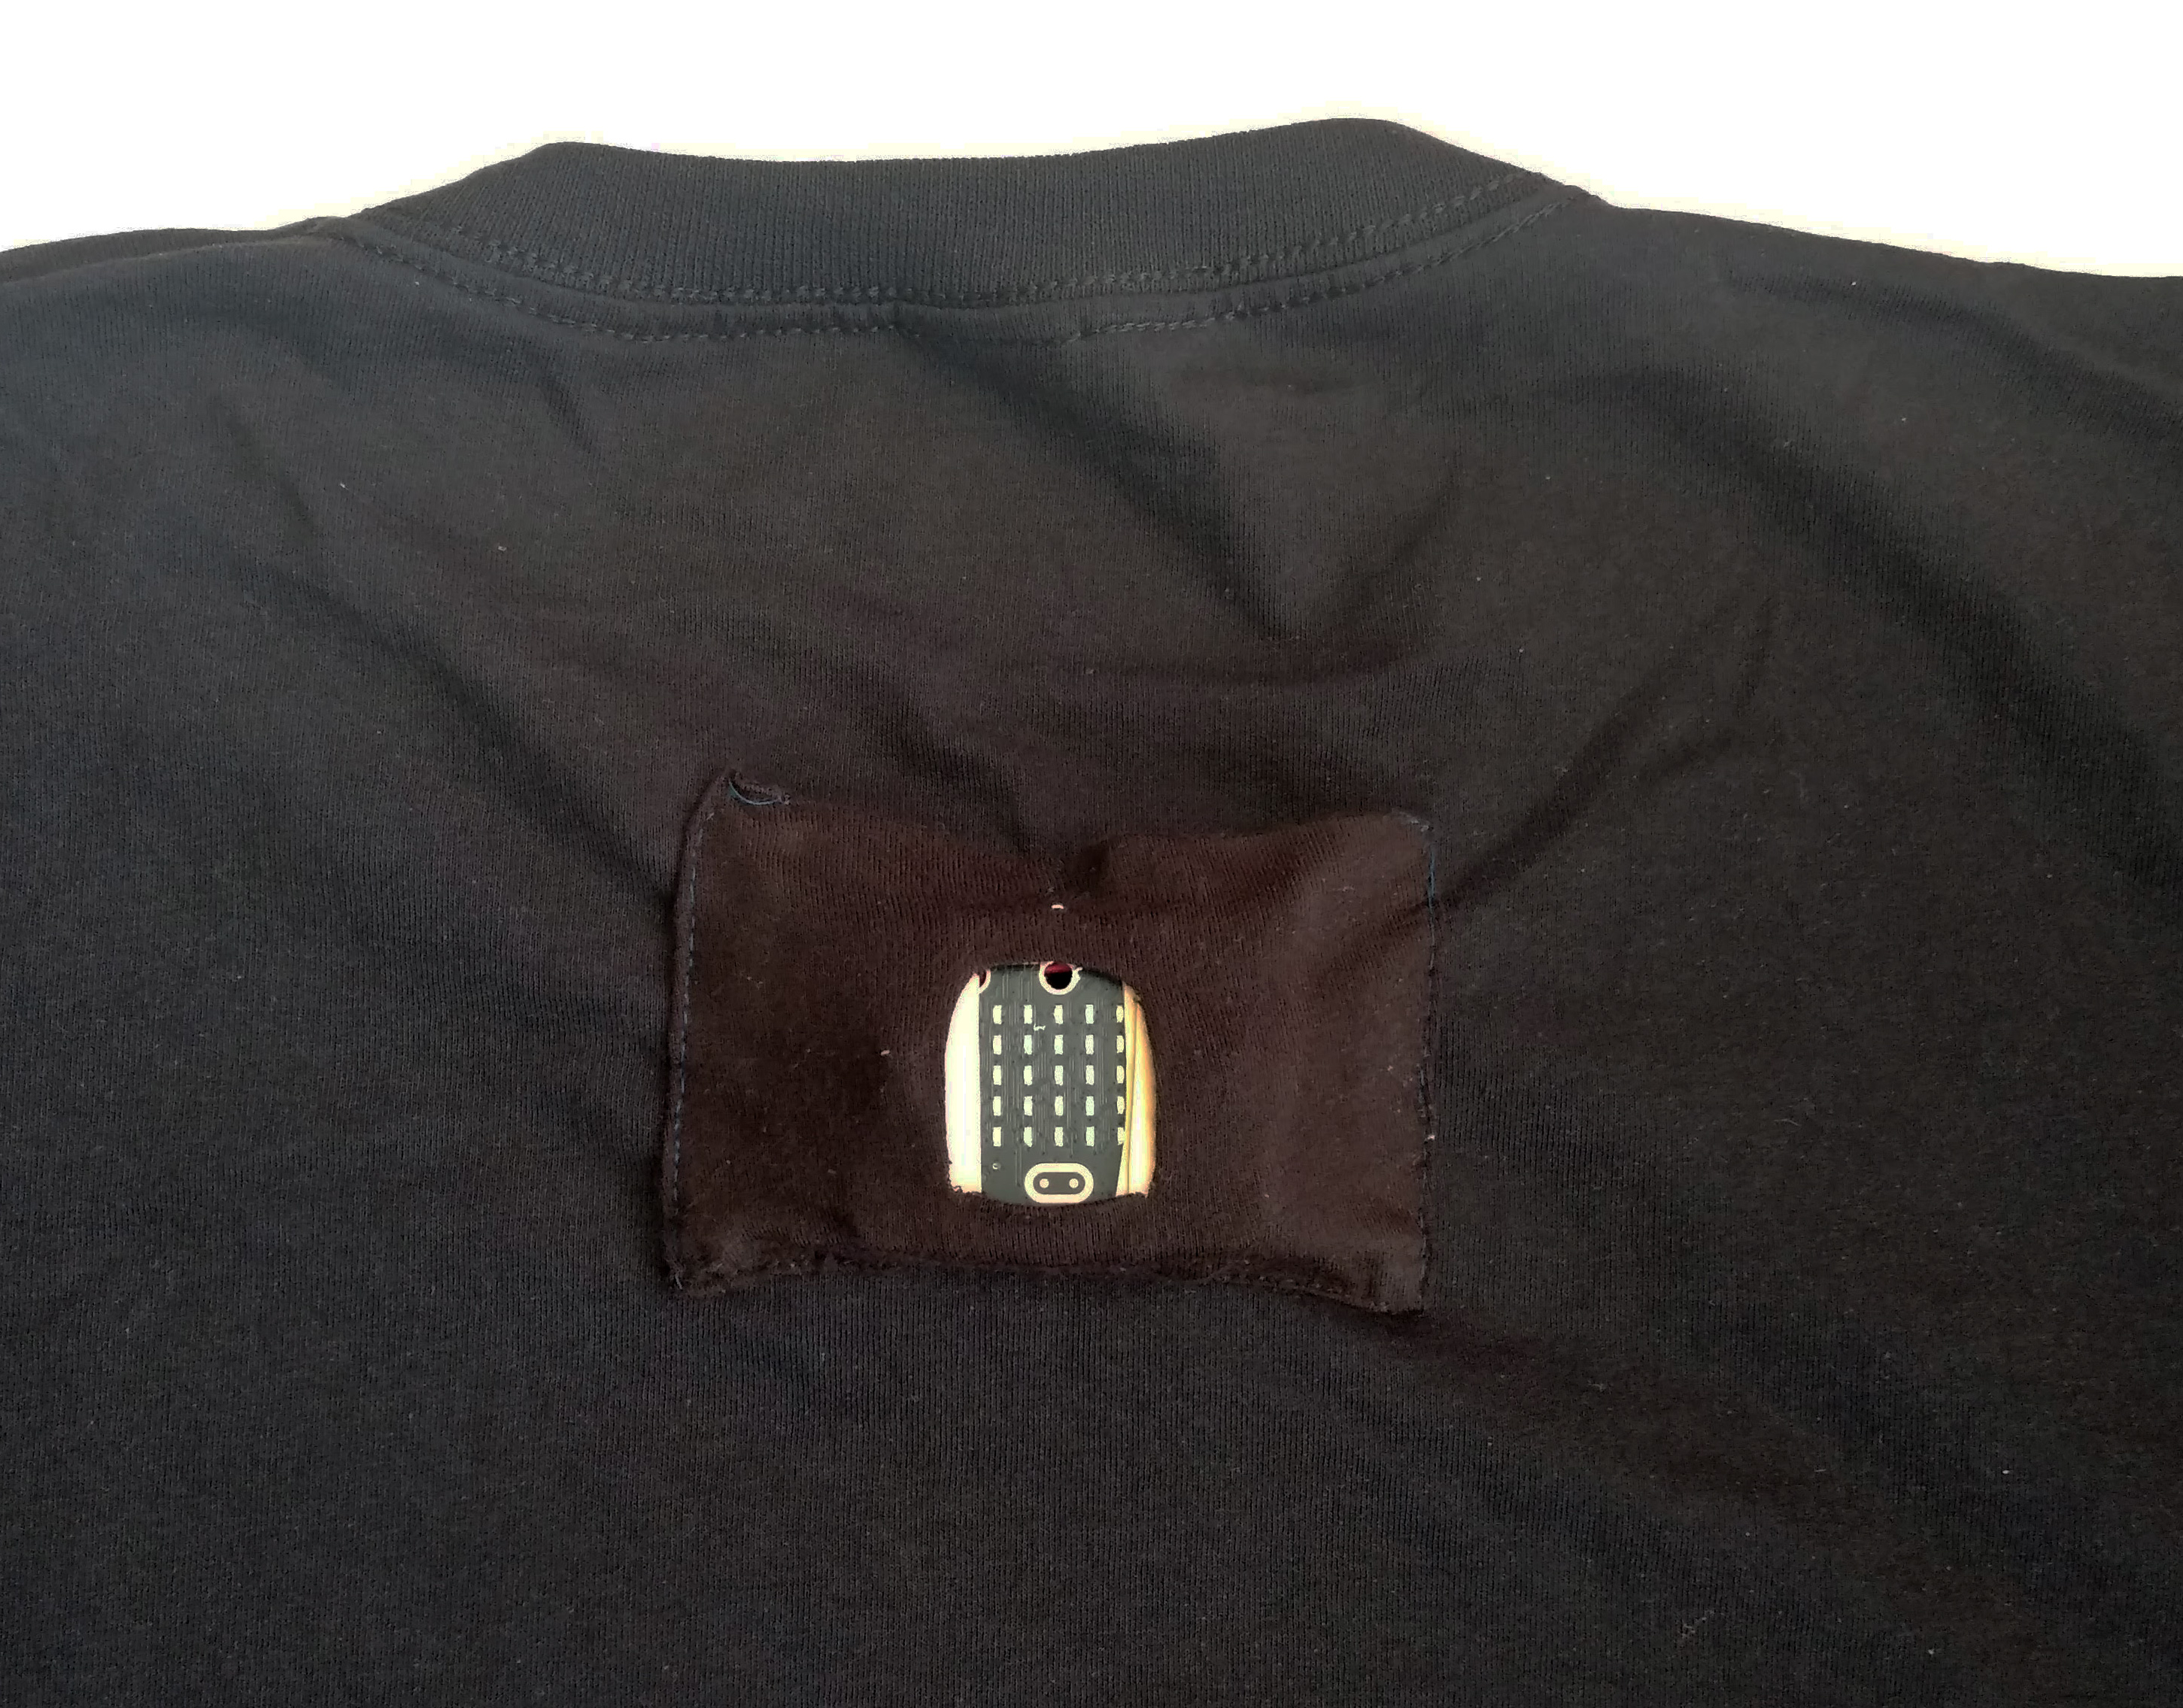 microbit-cycle-lights-t-shirt-pocket-B